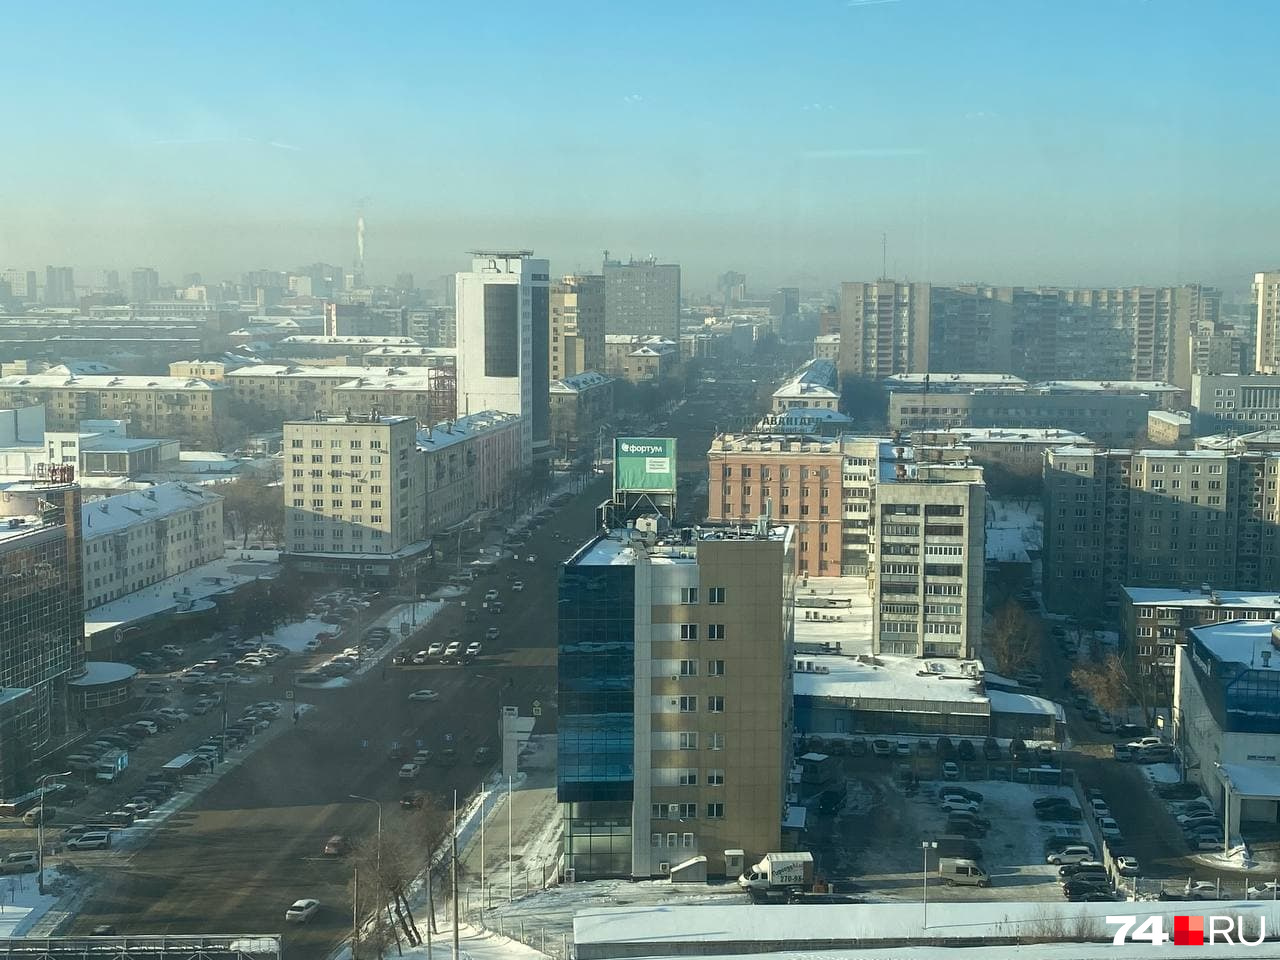 Вид на проспект Ленина. По сравнению с Металлургическим районом здесь относительно чистый воздух. В центре свою долю загрязнений дают автомобили